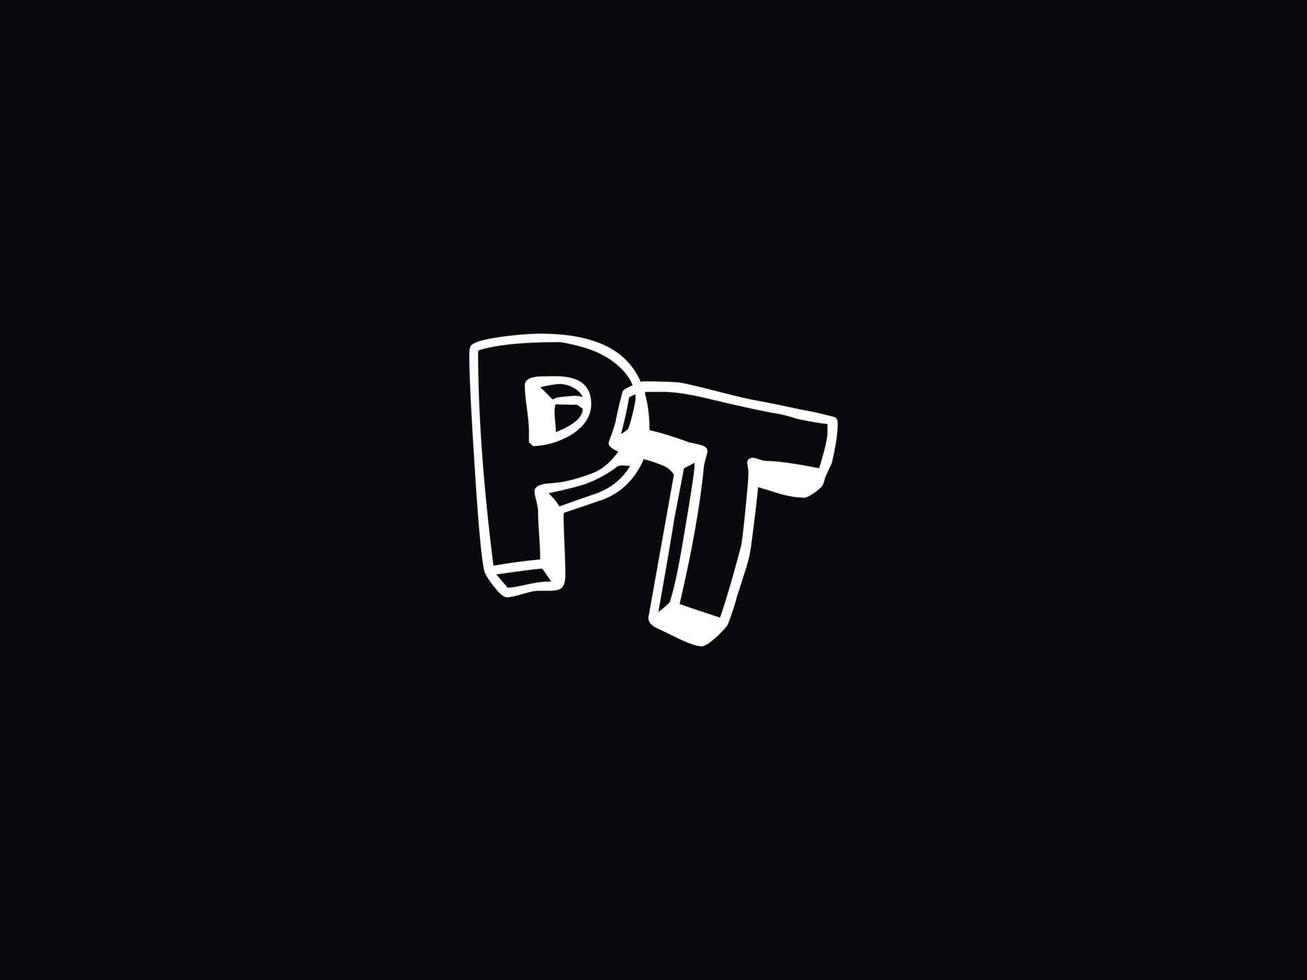 Creative Pt Letter Logo, Monogram PT Black White Letter Logo Design vector